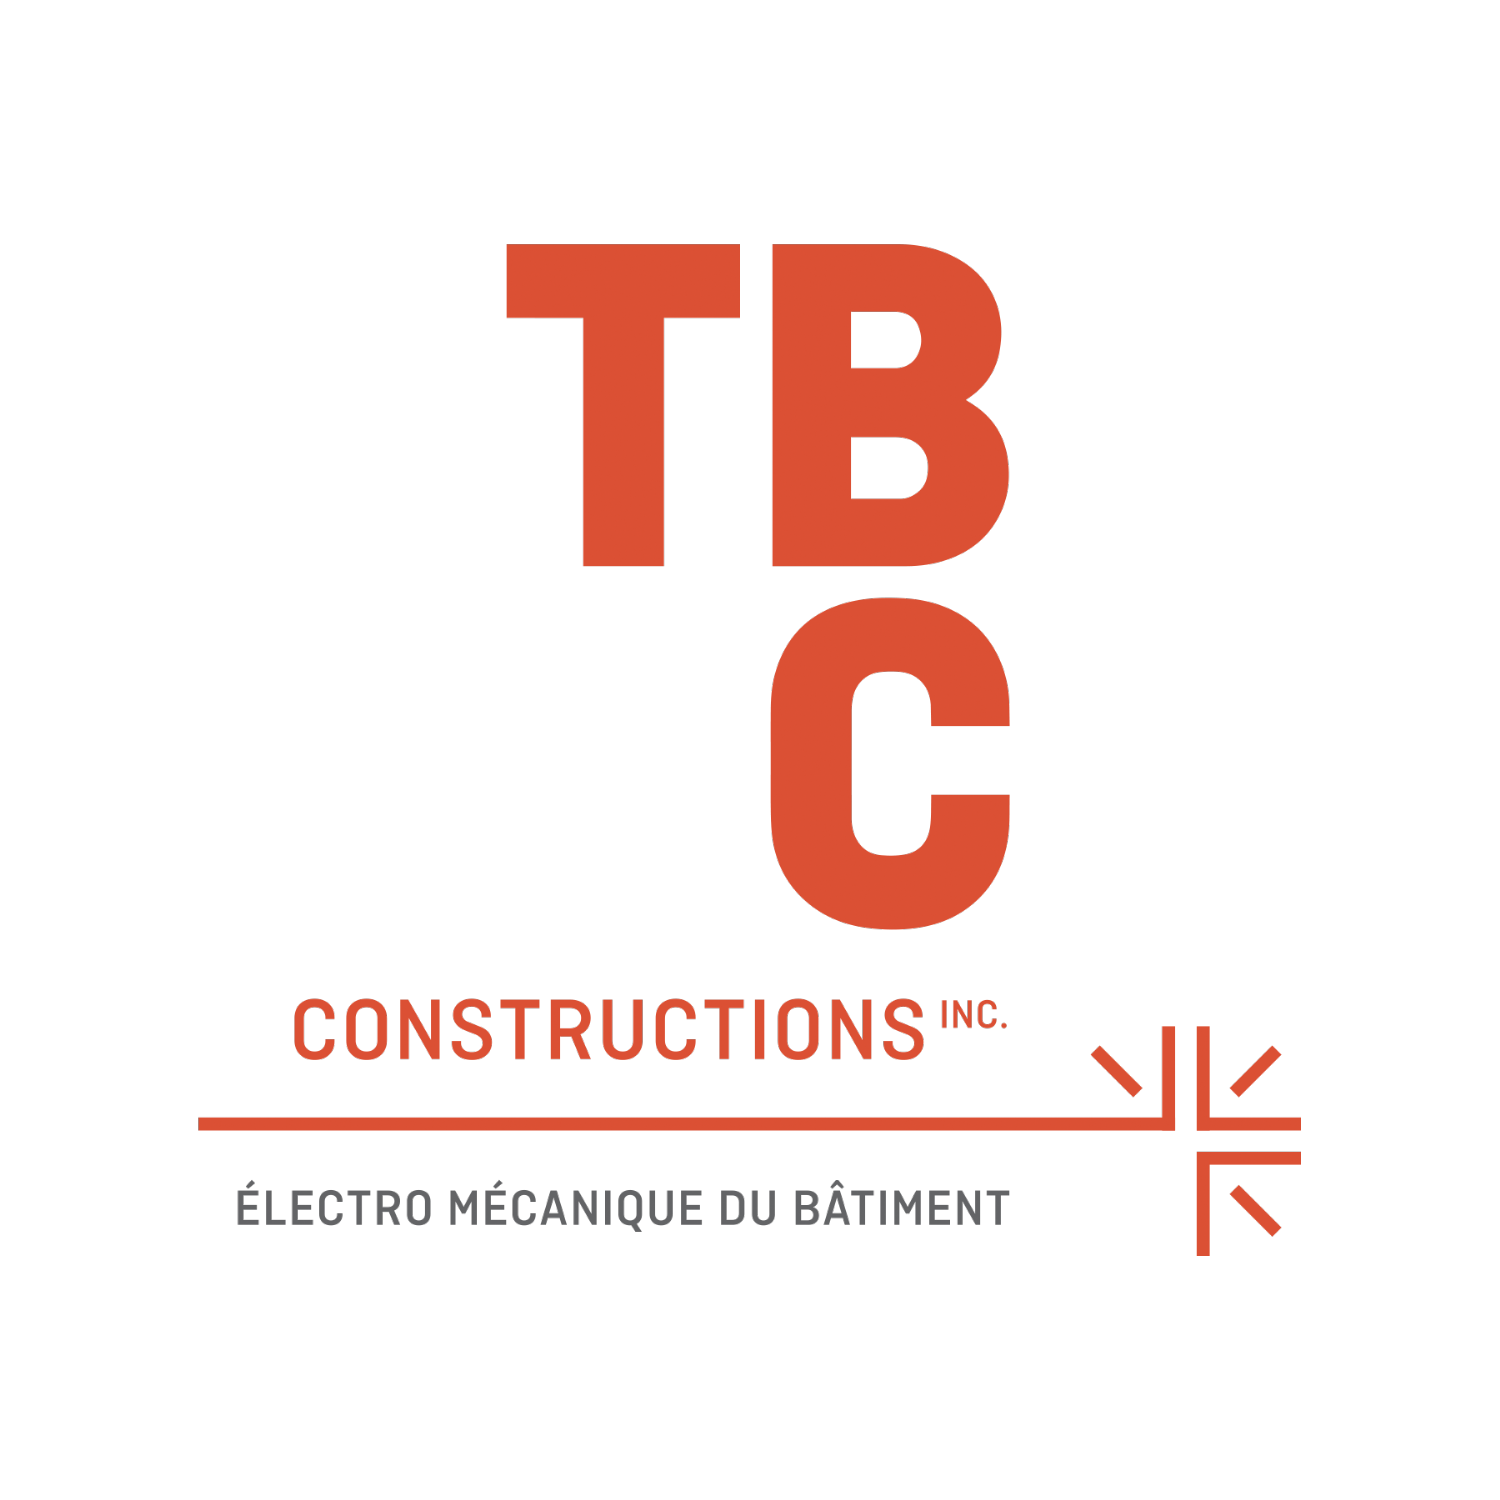 TBC Constructions Inc. logo